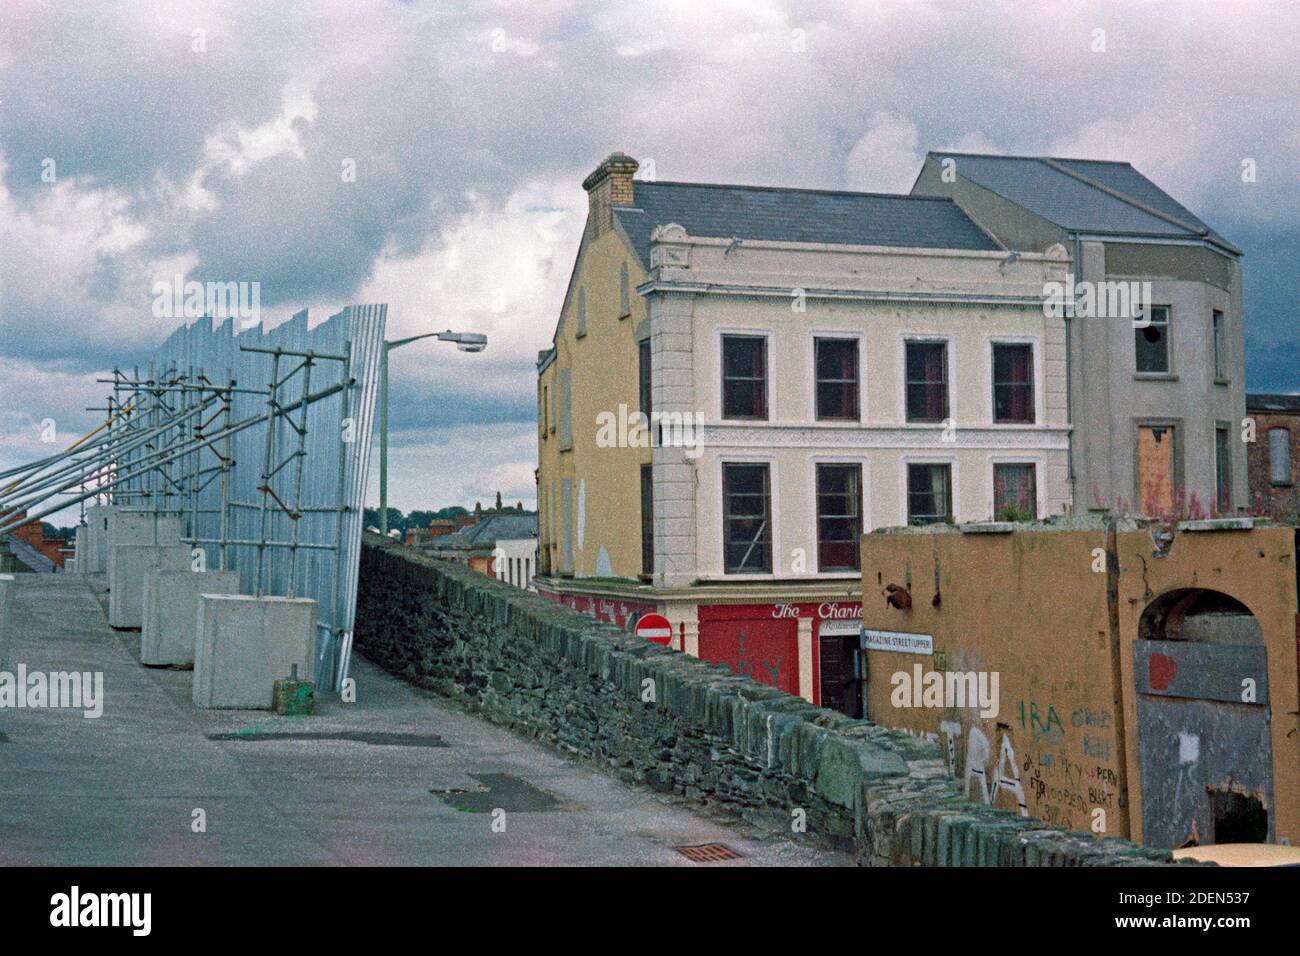 Stadtmauer, rechts Upper Magazine Street, historische Aufnahme, August 1986, Londonderry, Nordirland | City Walls, Upper Magazine Street on the right, August 1986, Londonderry, Northern Ireland Stock Photo